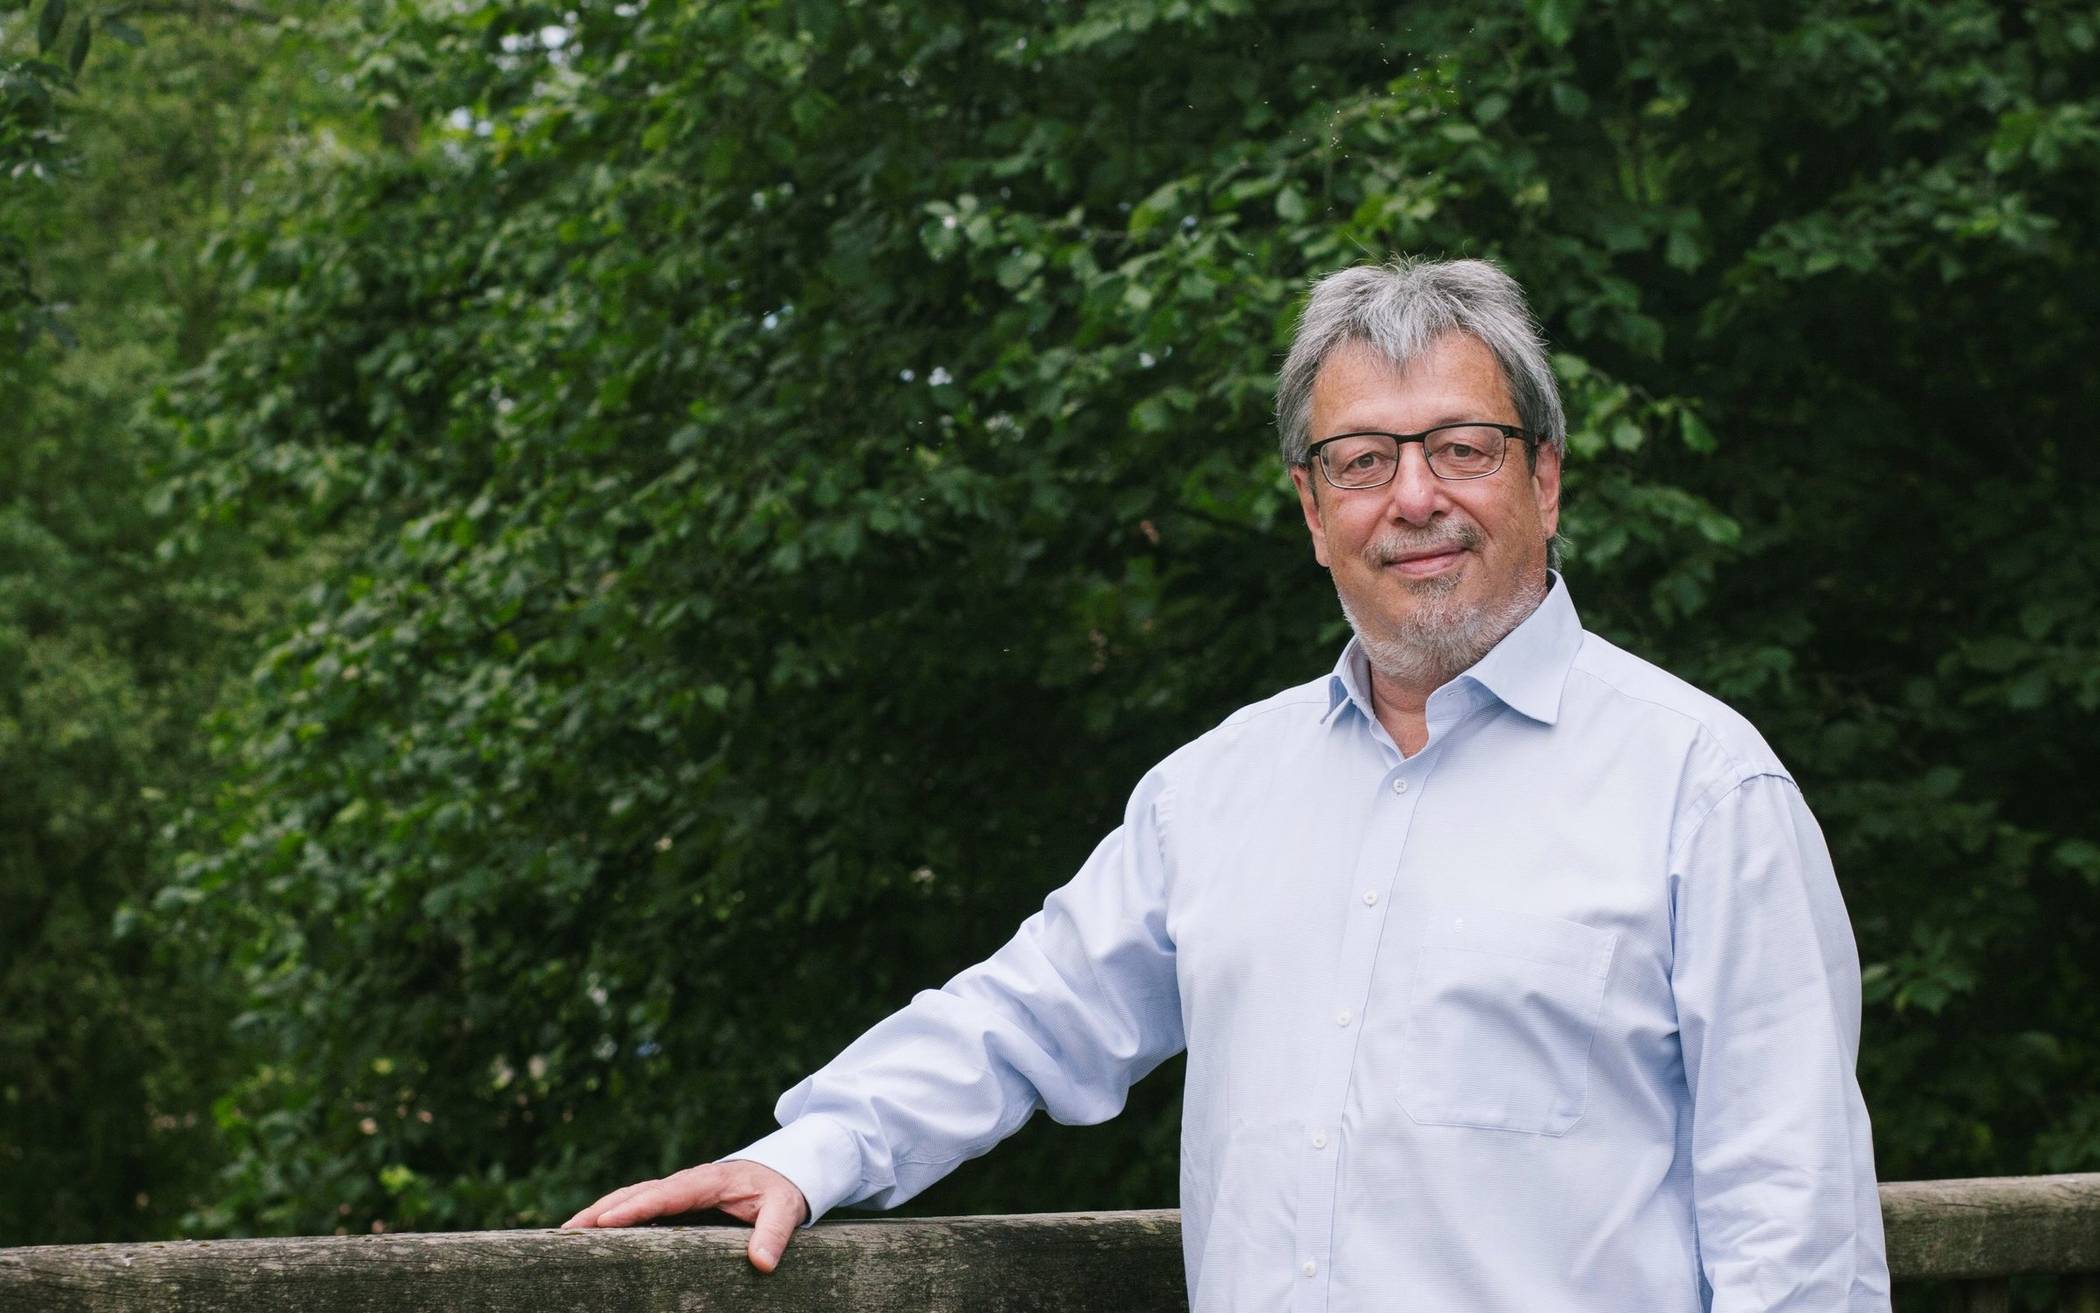  Peter Knitsch, Bündnis 90/Die Grünen Erkrath, bewirbt sich auf das Amt des Bürgermeisters in Erkrath. 